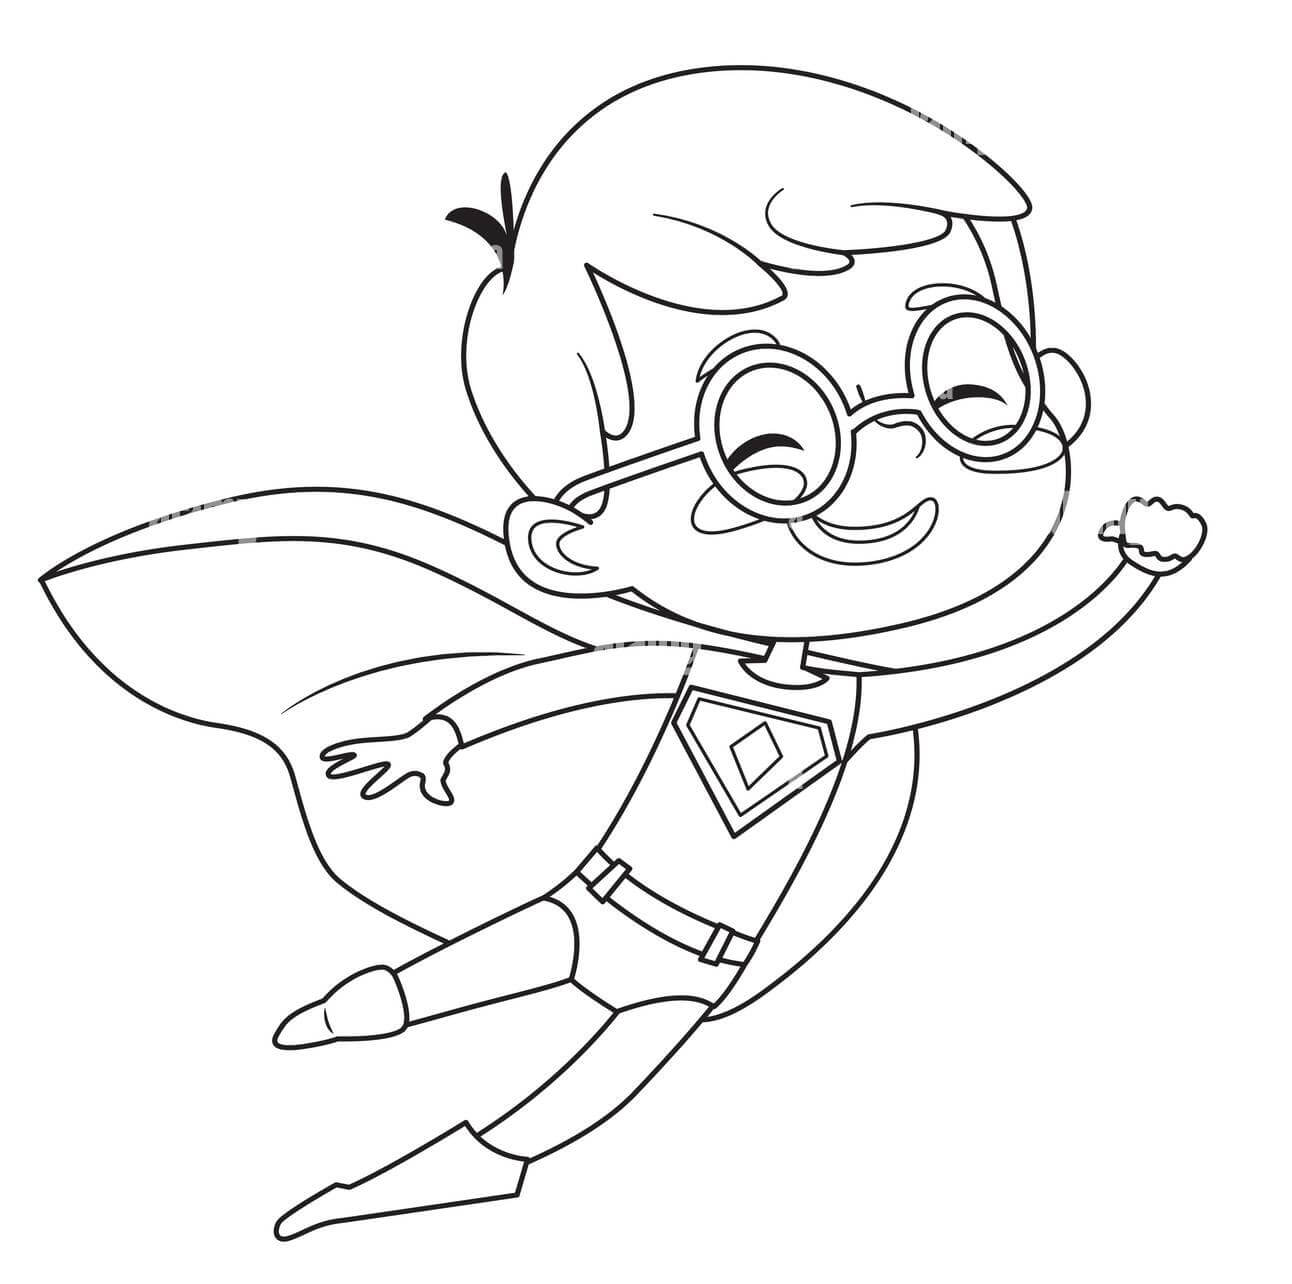 Superboy Voando para colorir